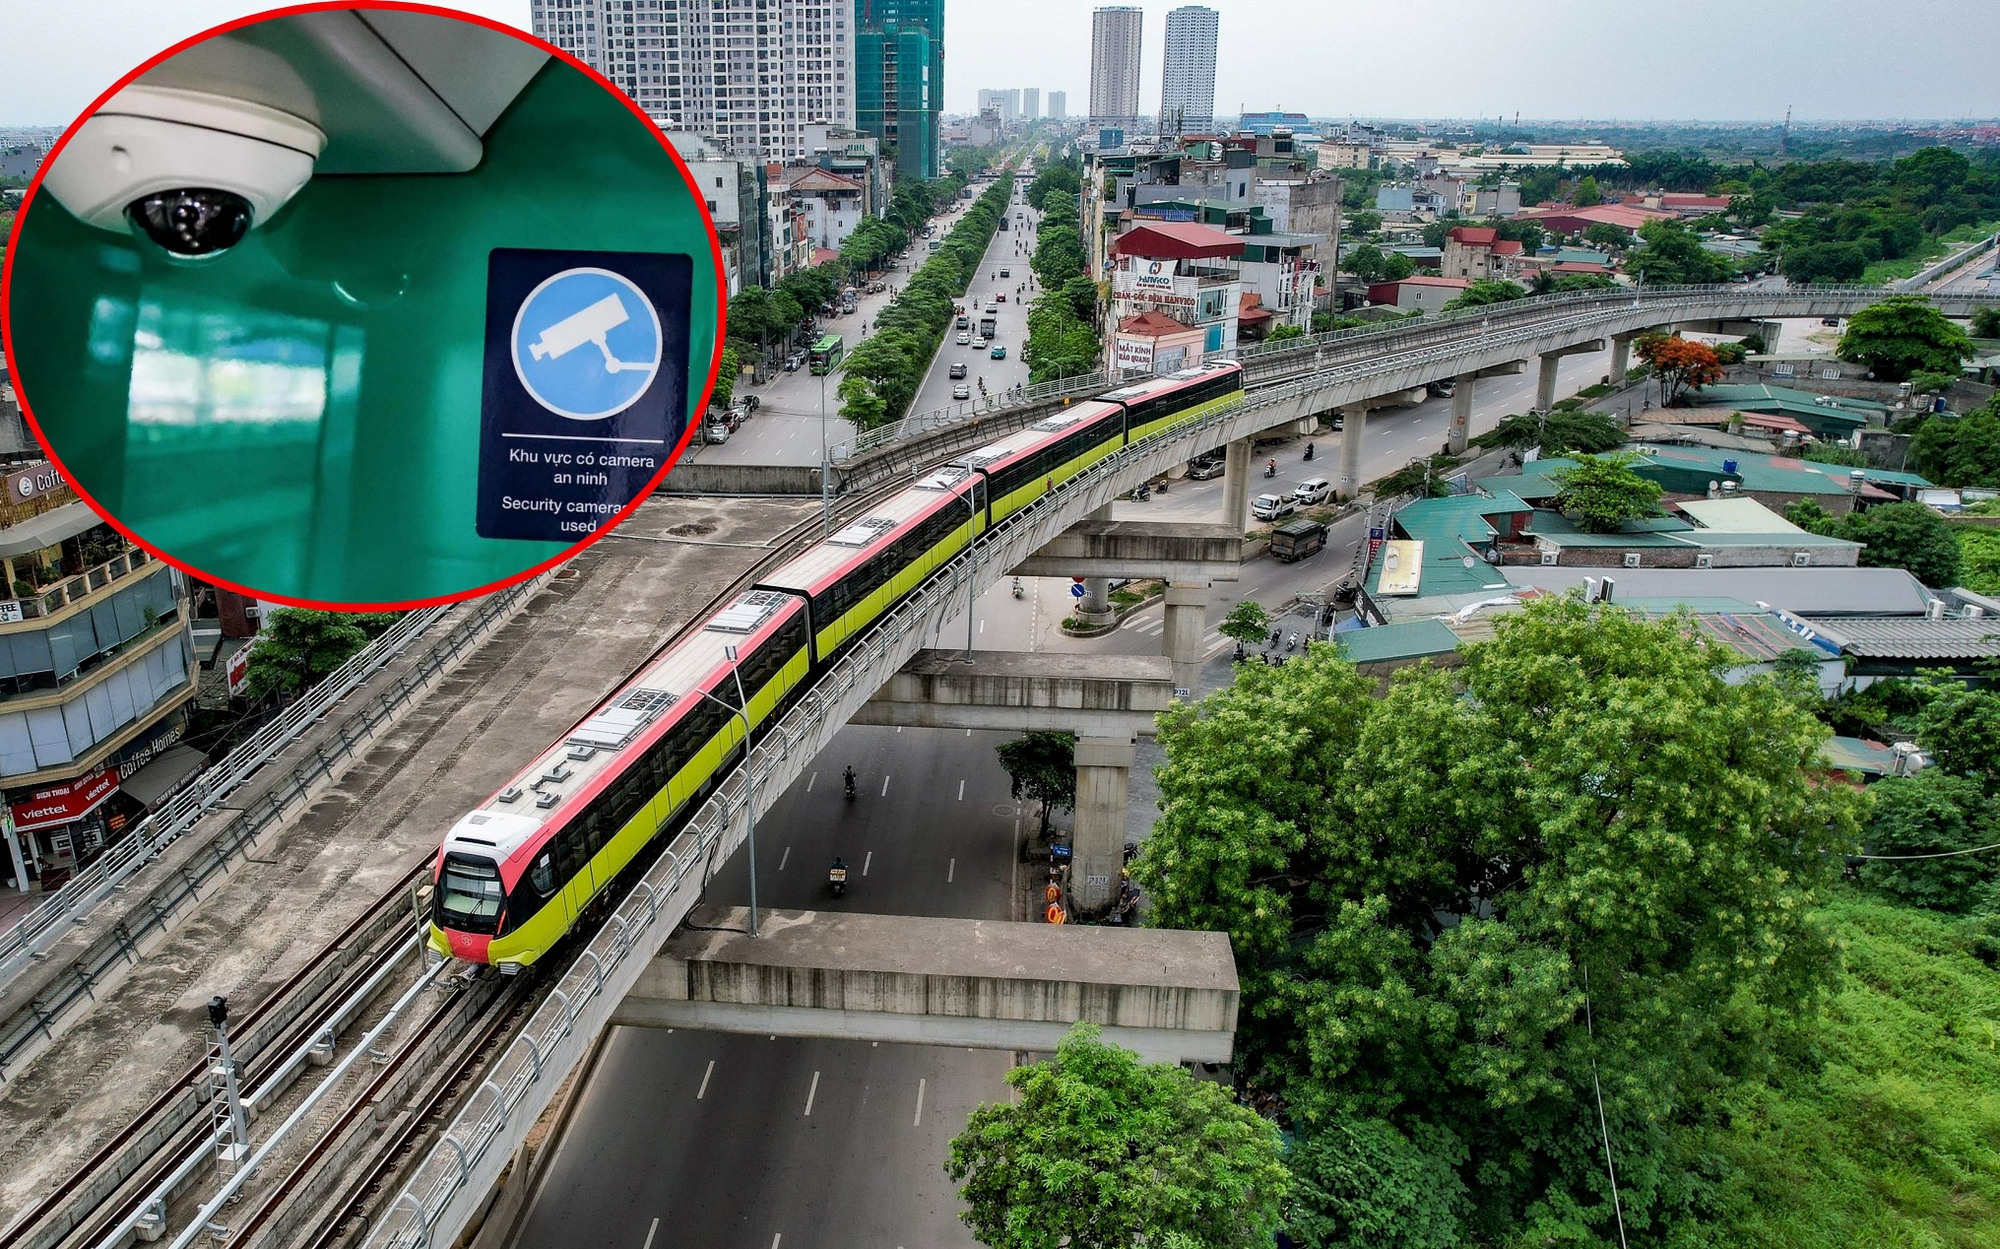 Soi "mắt thần" tàu metro 34.800 tỷ ở Hà Nội - hình ảnh cá nhân về hàng nghìn khách được bảo vệ thế nào?